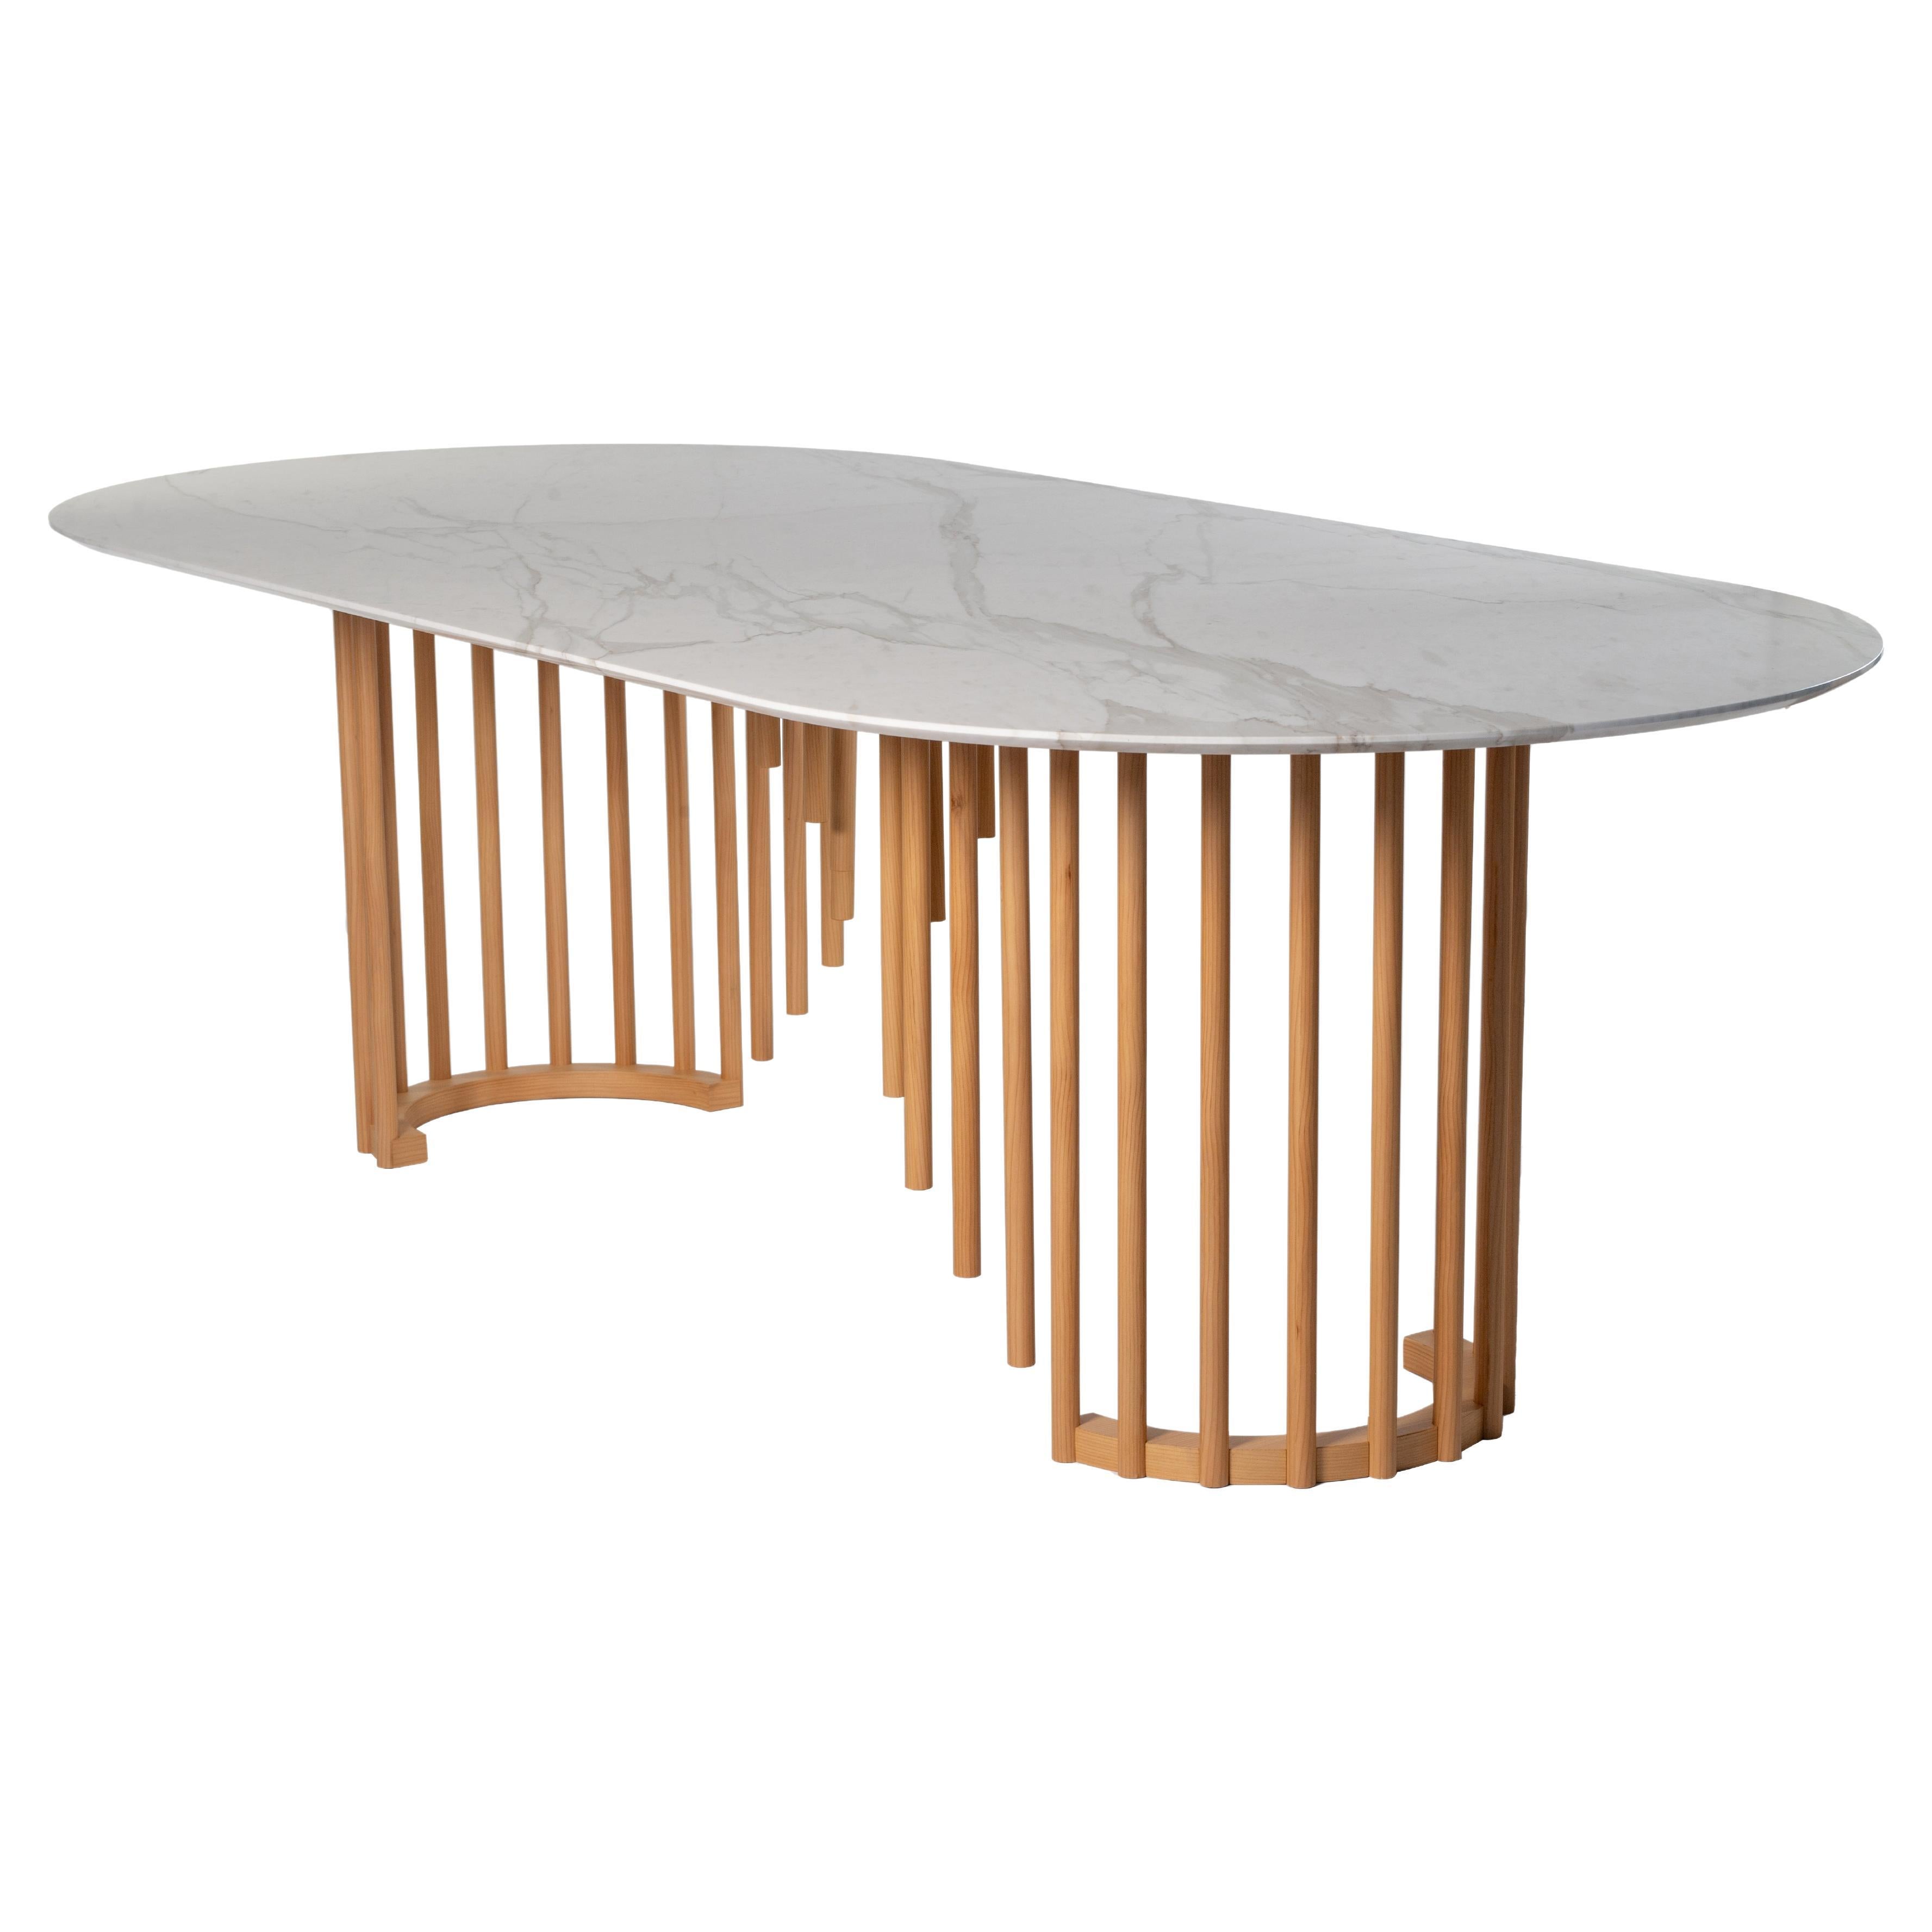 Cette table enchanteresse en cèdre est un hommage à la légèreté naturelle du roseau. Le plateau ellipsoïdal audacieux et lumineux en marbre blanc Calacatta est gracieusement soutenu par les éléments en forme de roseau de différentes longueurs qui